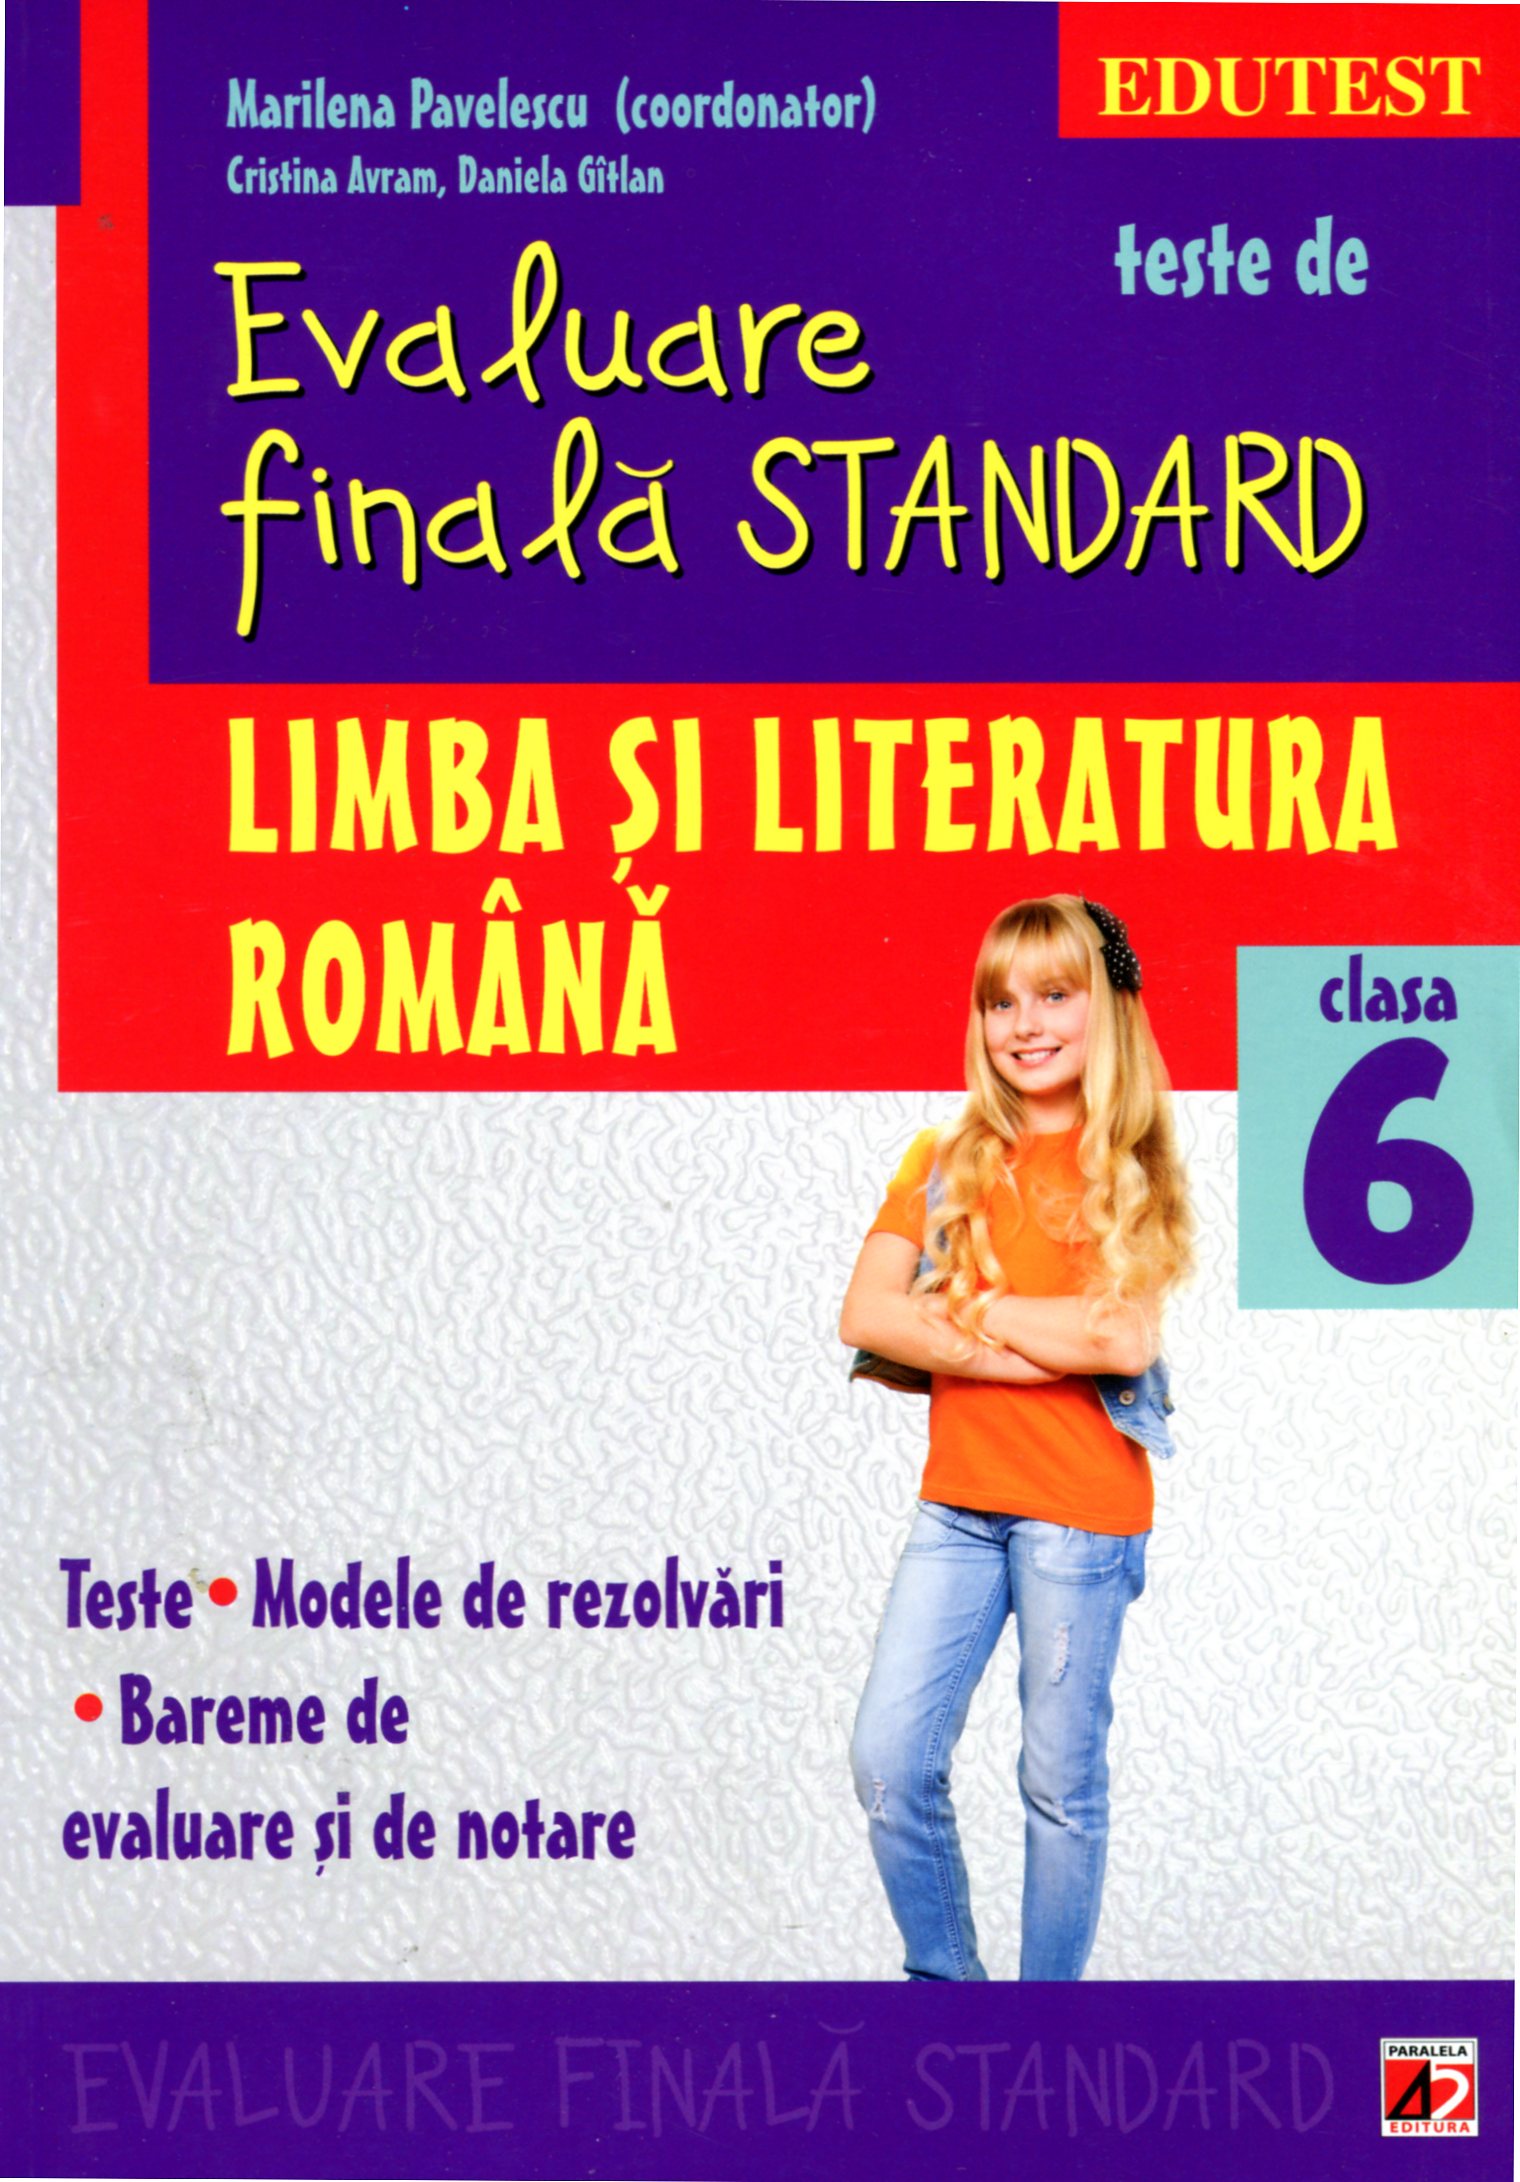 Romana clasa 6. Teste de evaluare finala standard ed.2 - Marilena Pavelescu